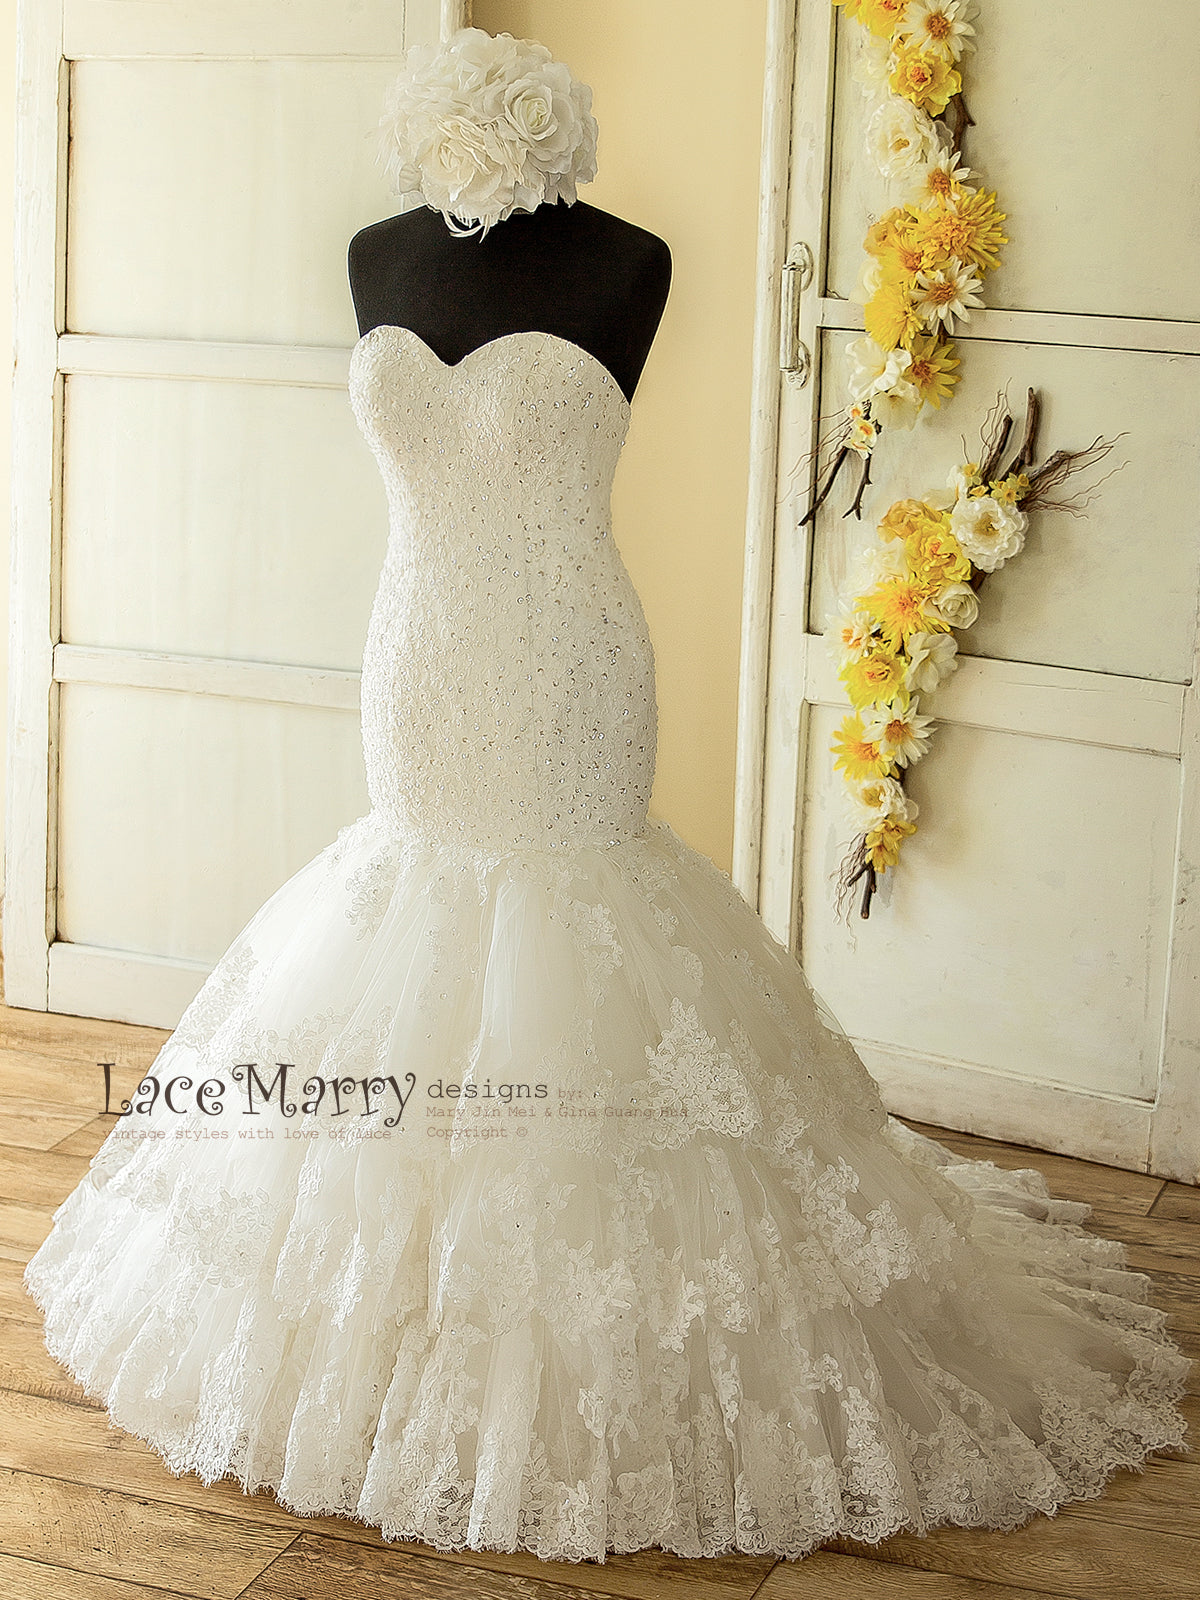 Amazing Lace Wedding Dress with Beading